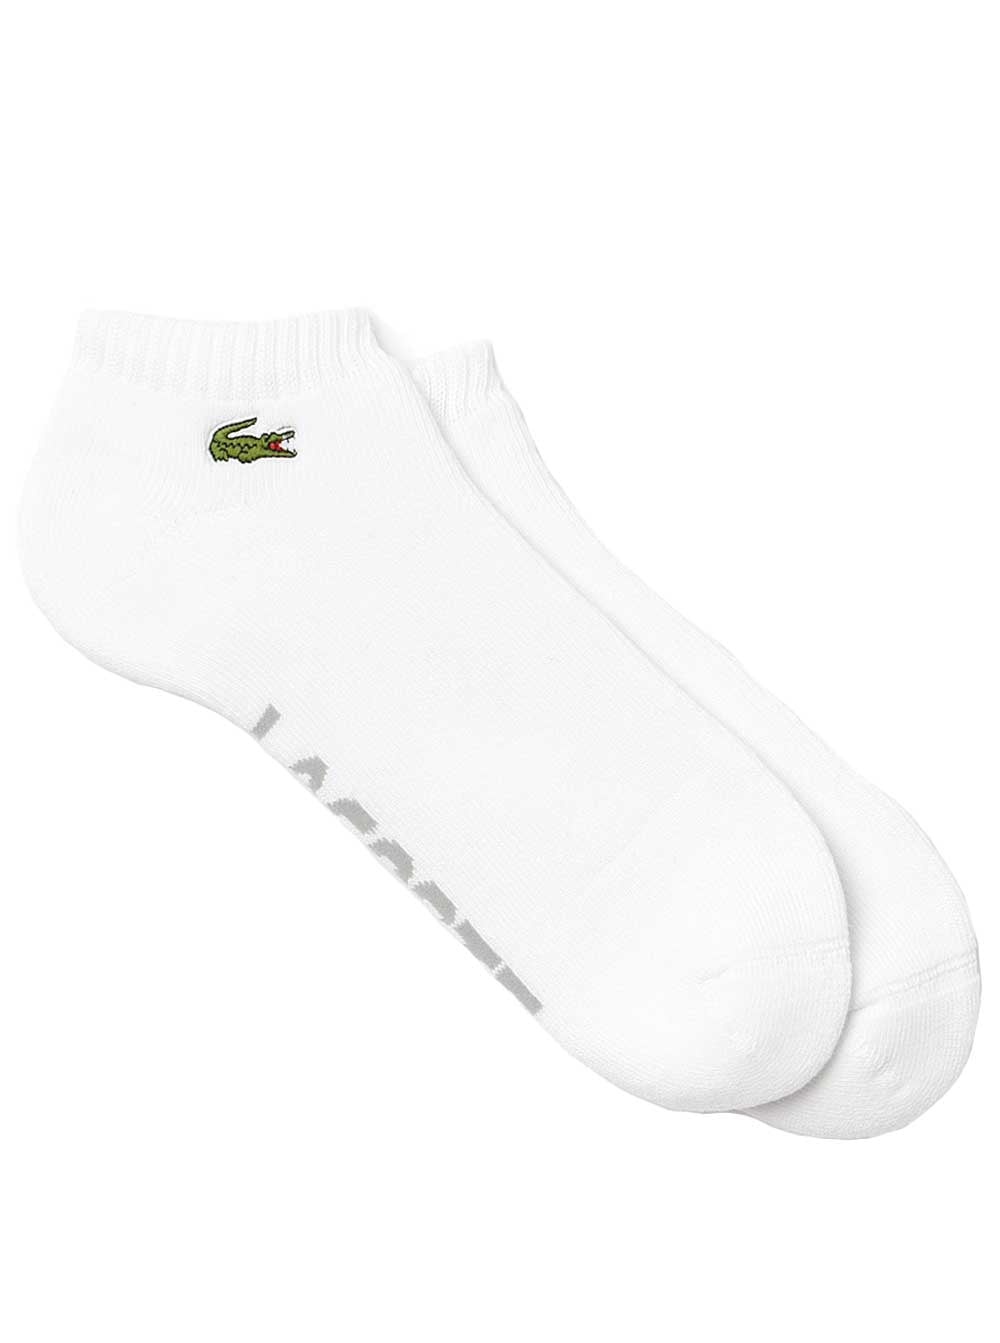 Lacoste - Lacoste Women's Ped Socks 